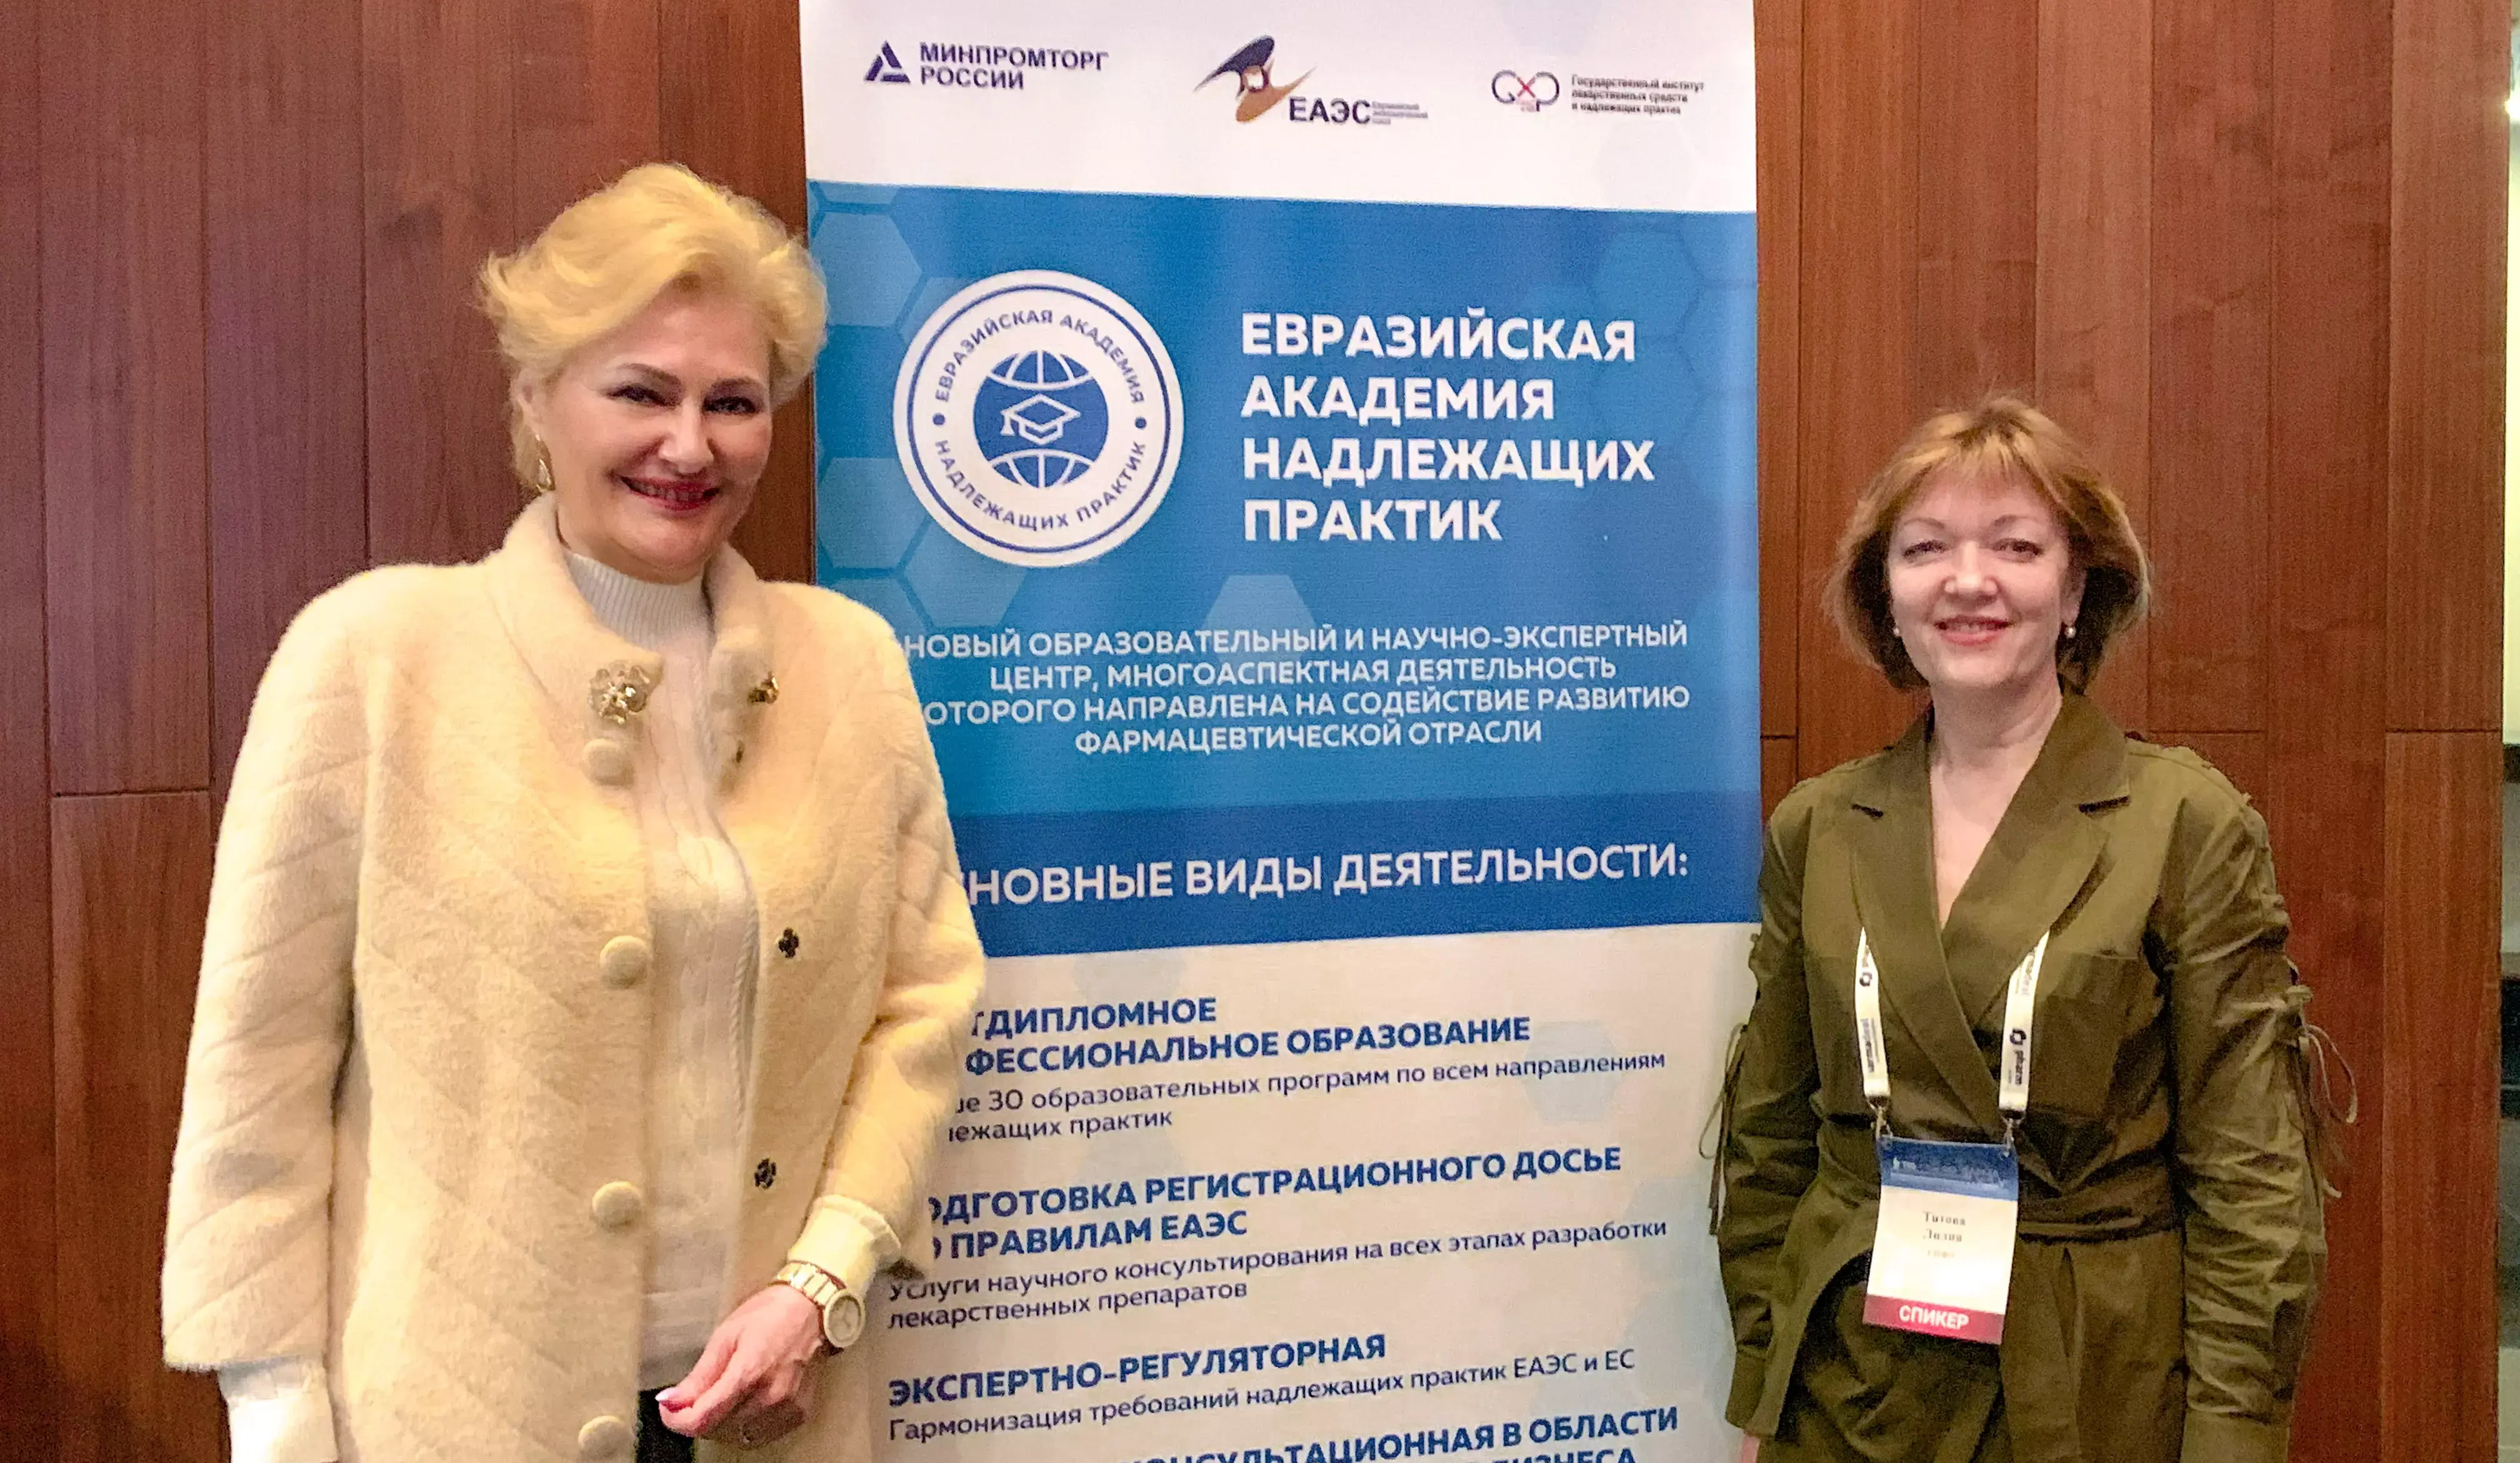 Евразийская Академия надлежащих практик договорилась с Союзом профессиональных фармацевтических организаций о проведении совместных мероприятий